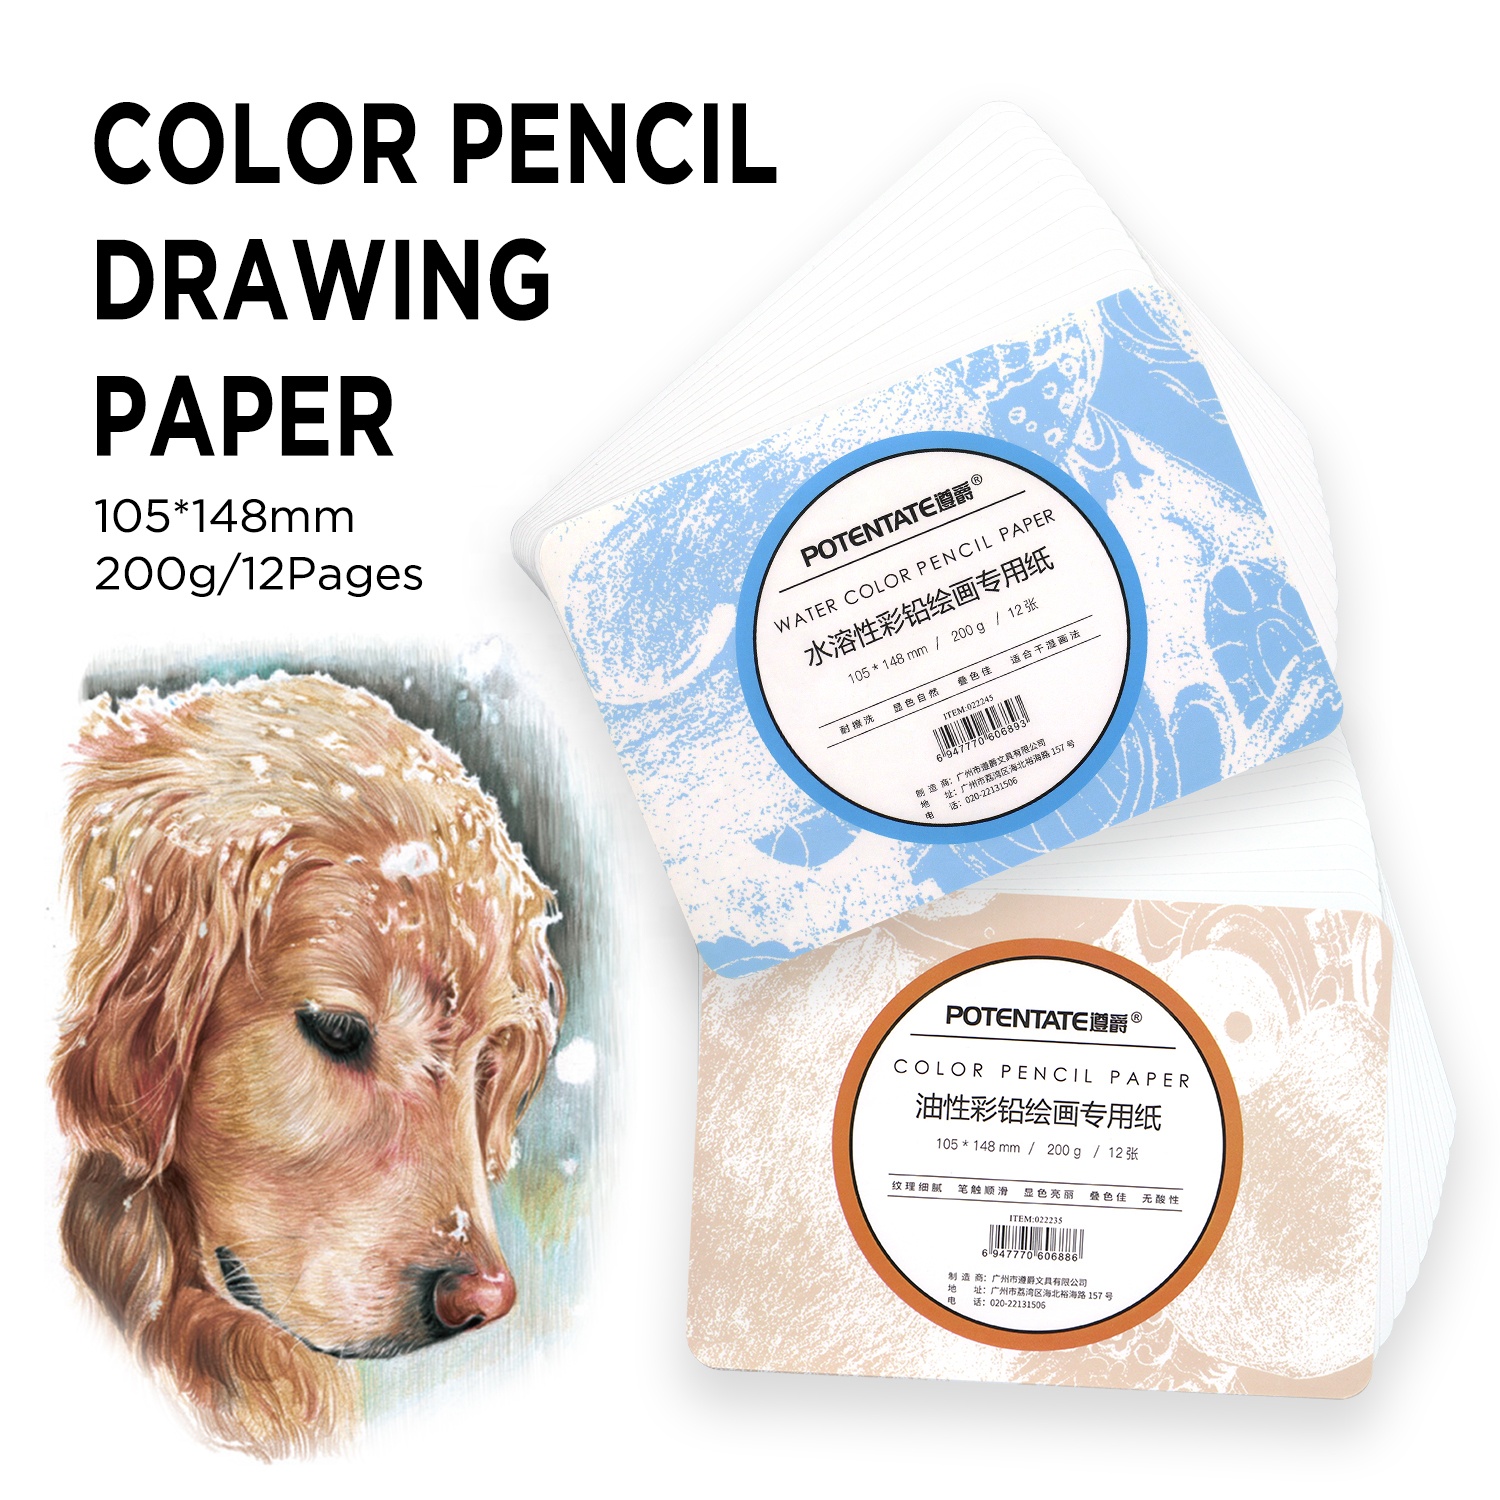 Potentate A6 Premium Sketch Drawing Paper untuk Pensil Warna Berminyak &amp; Water Color Pencil200GSM Paper Pad/12 halaman1